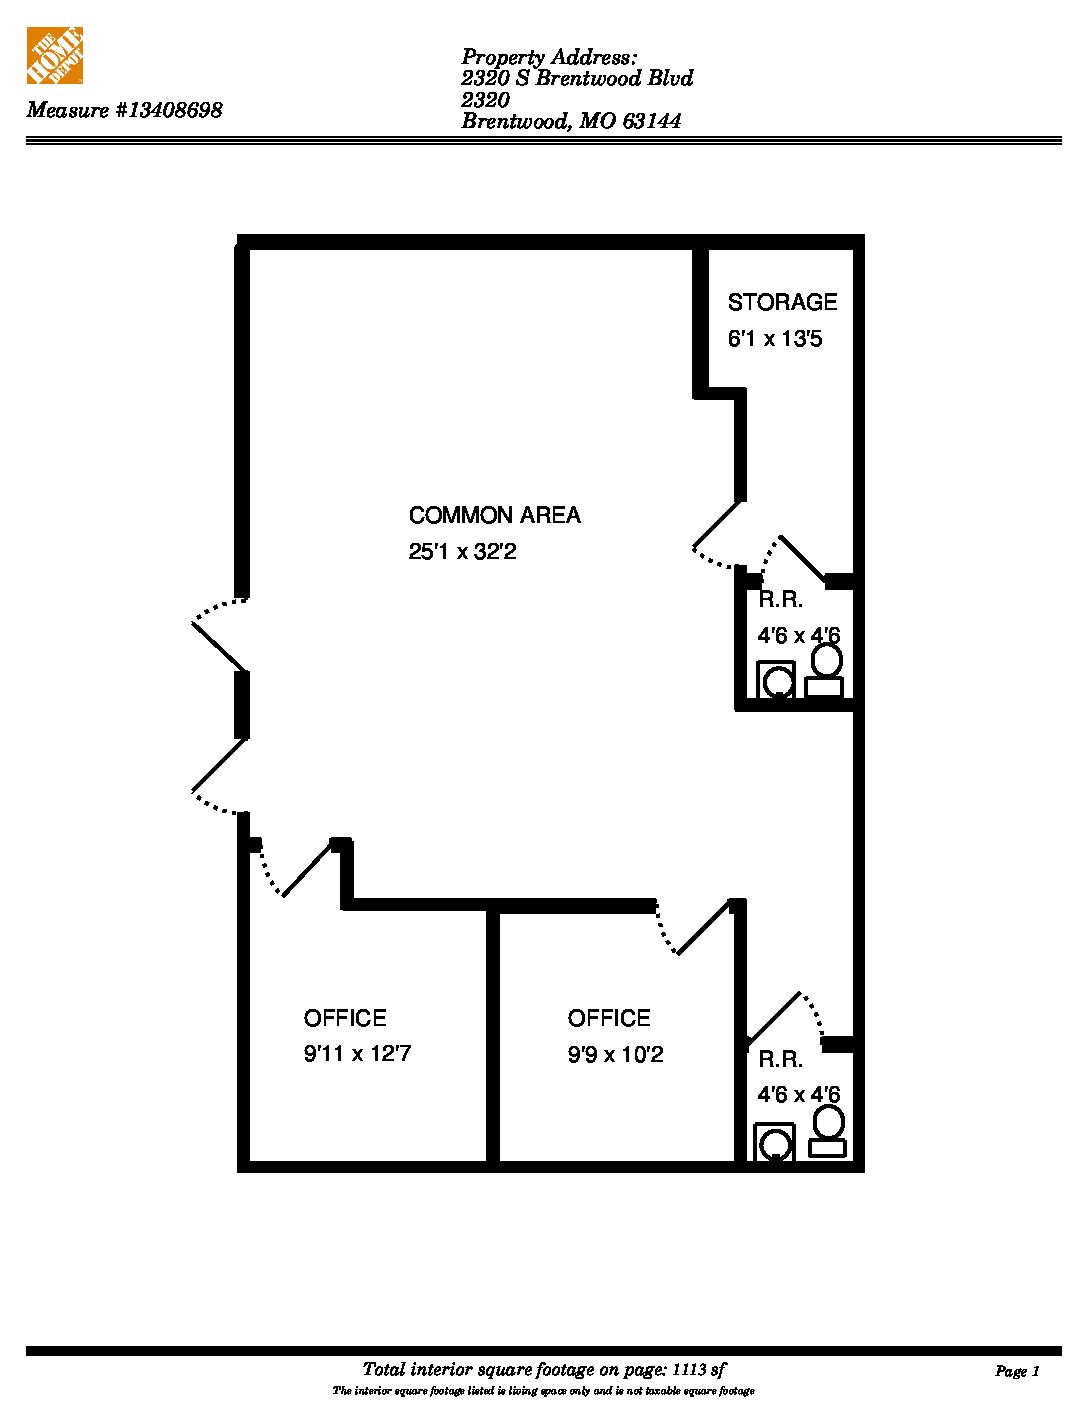 Floor plan with Hallway